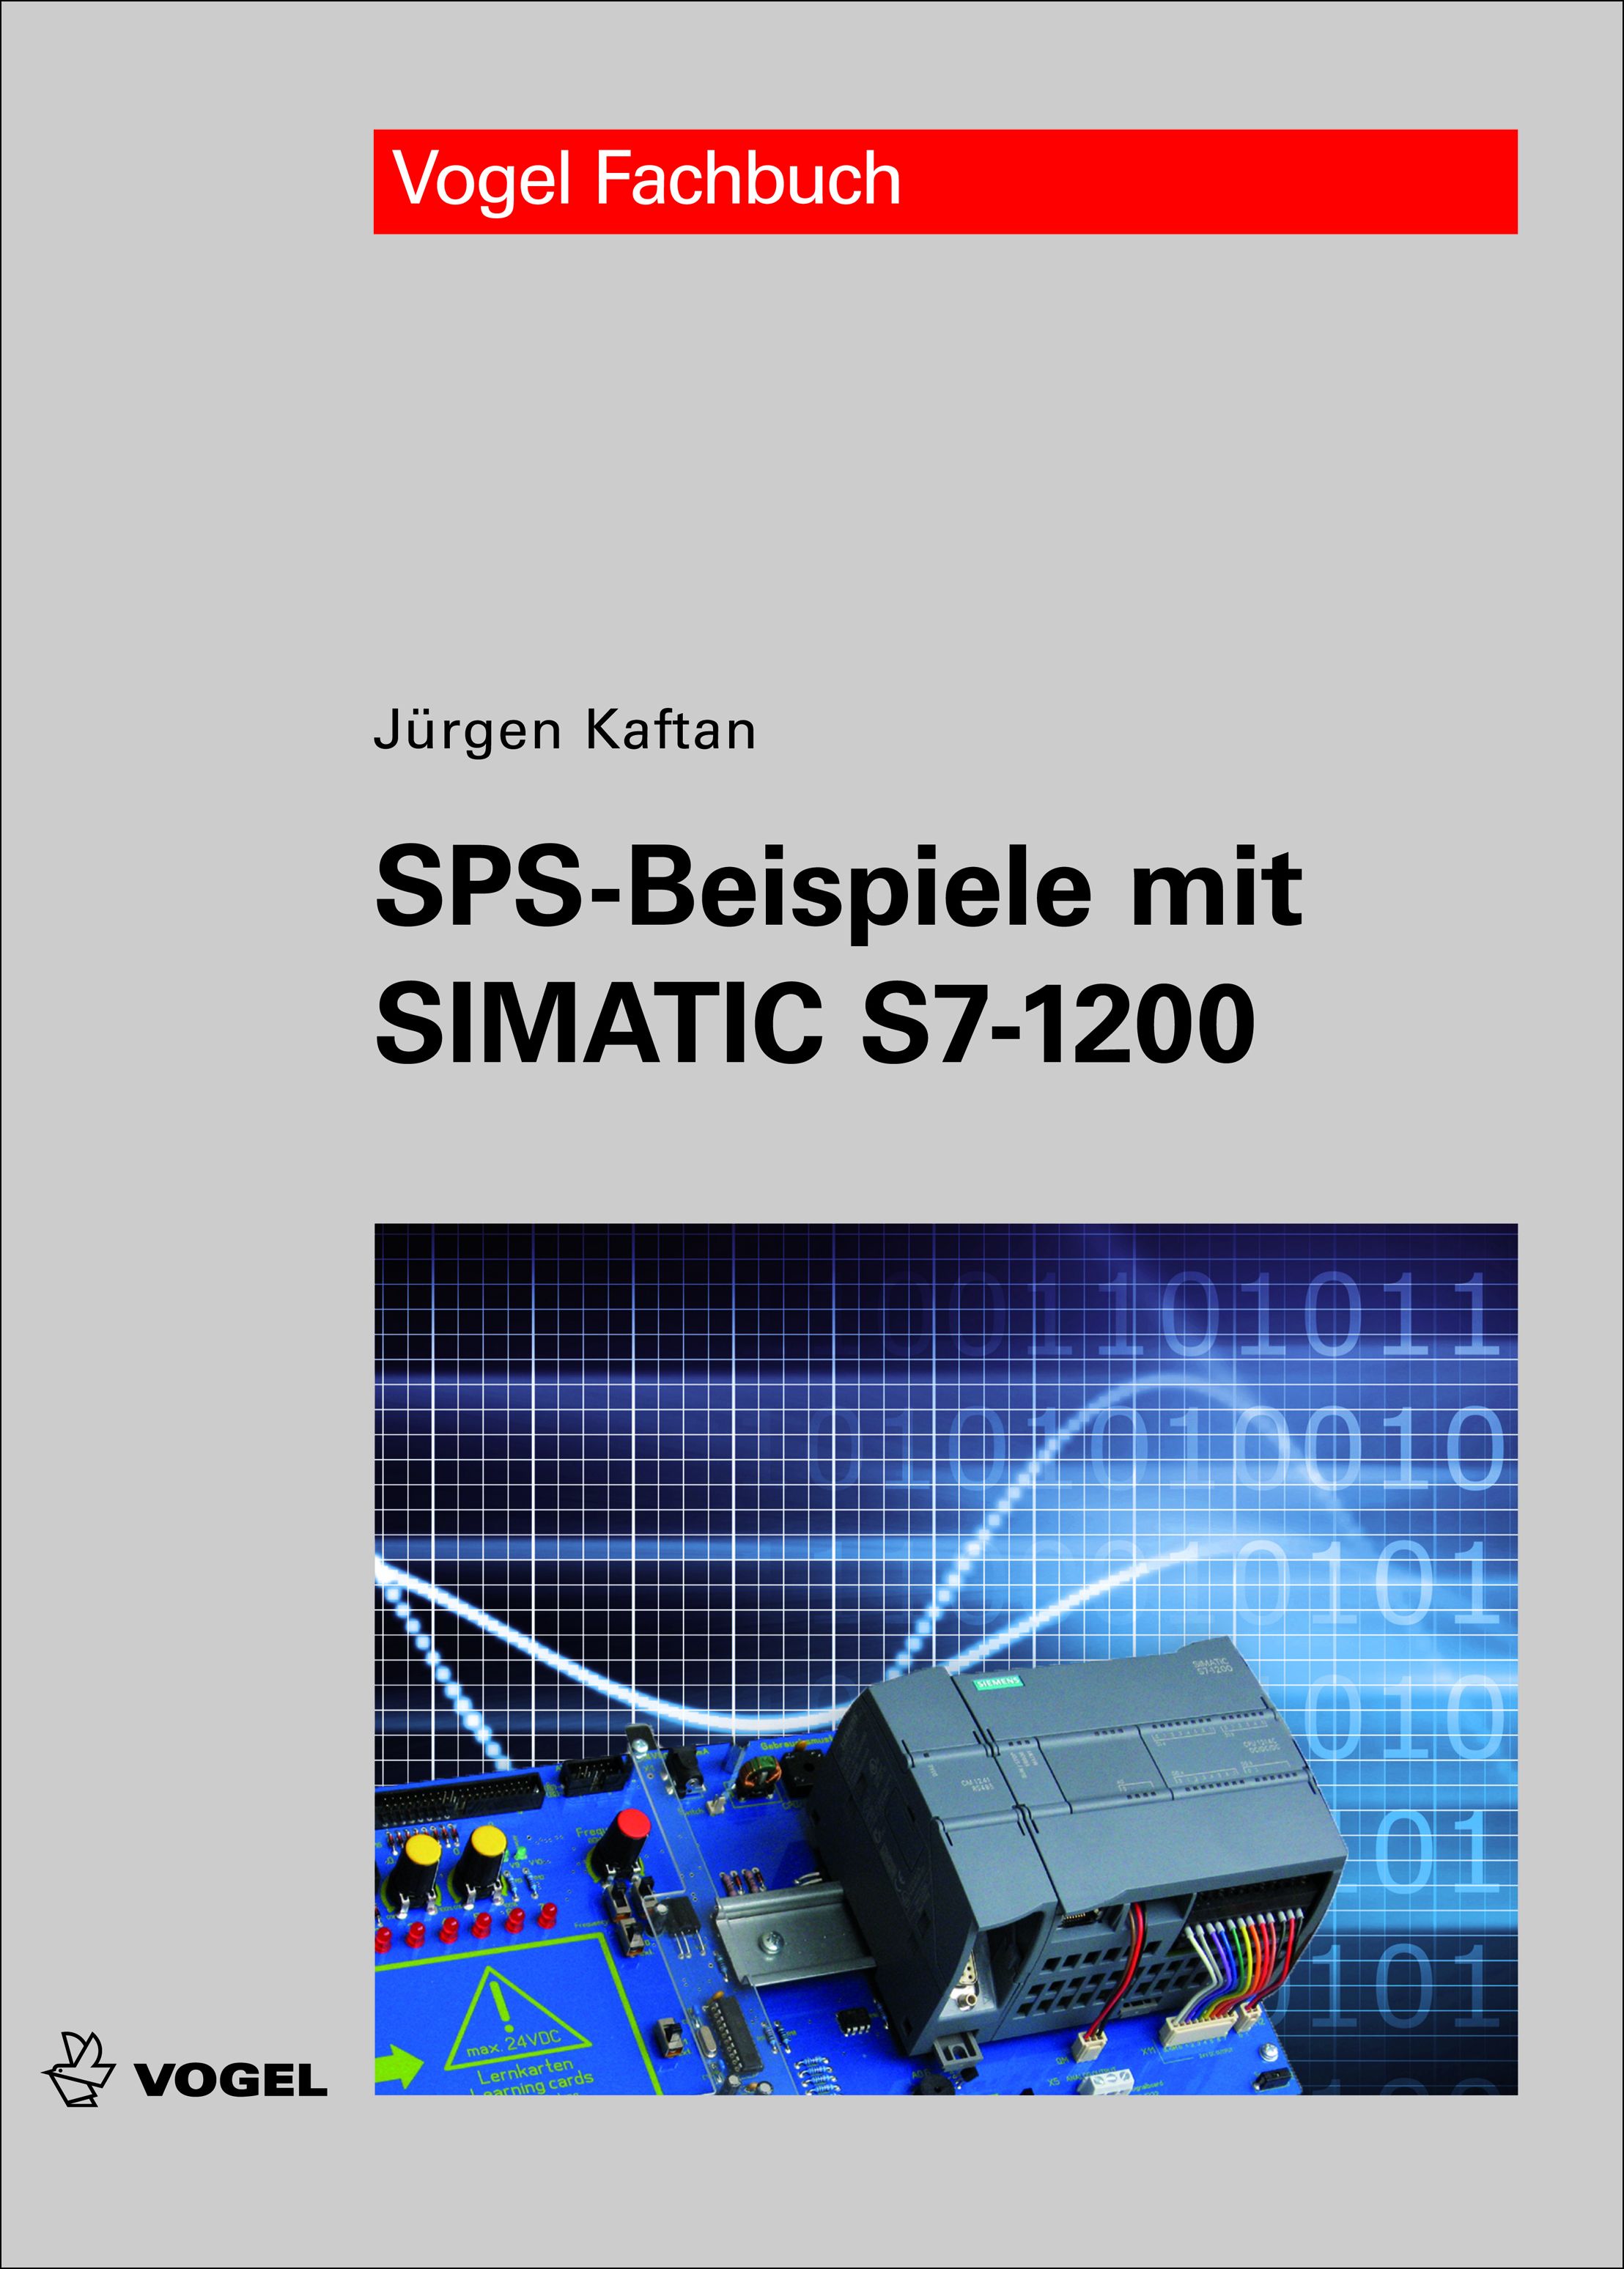 Das Fachbuch "SPS-Beispiele mit SIMATIC S7-1200" von Jürgen Kaftan